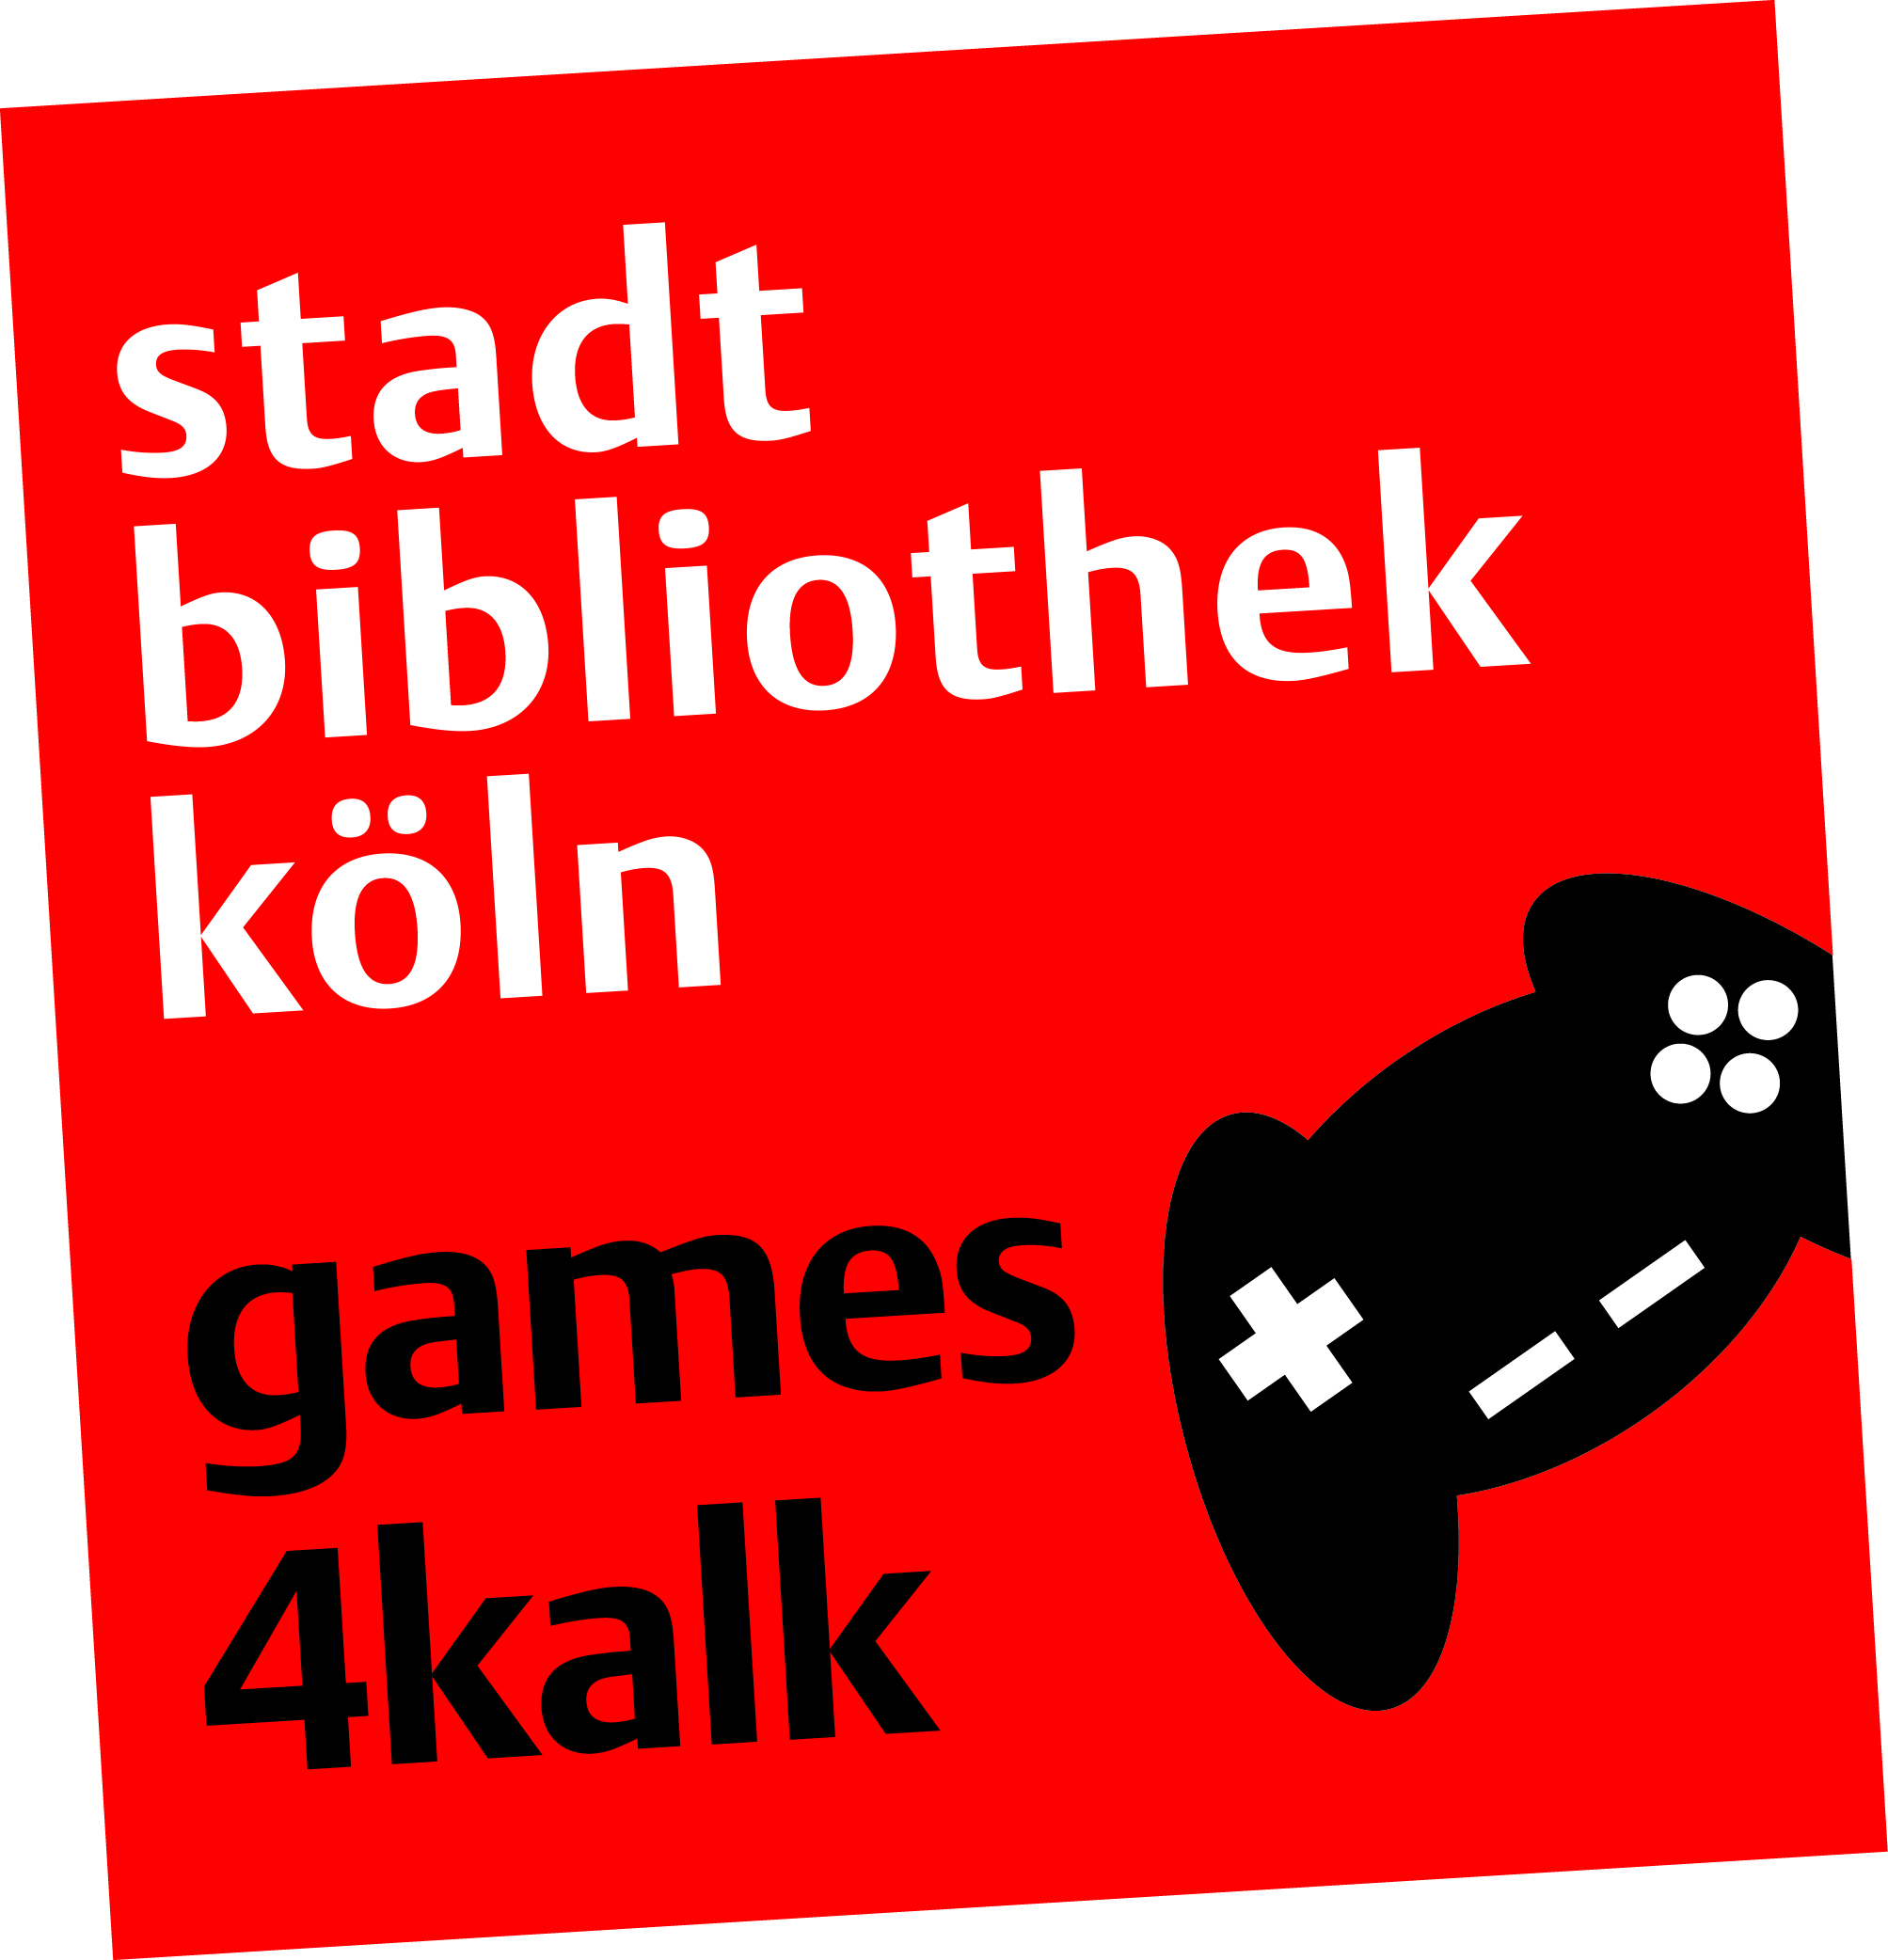 Games4Kalk_Logo